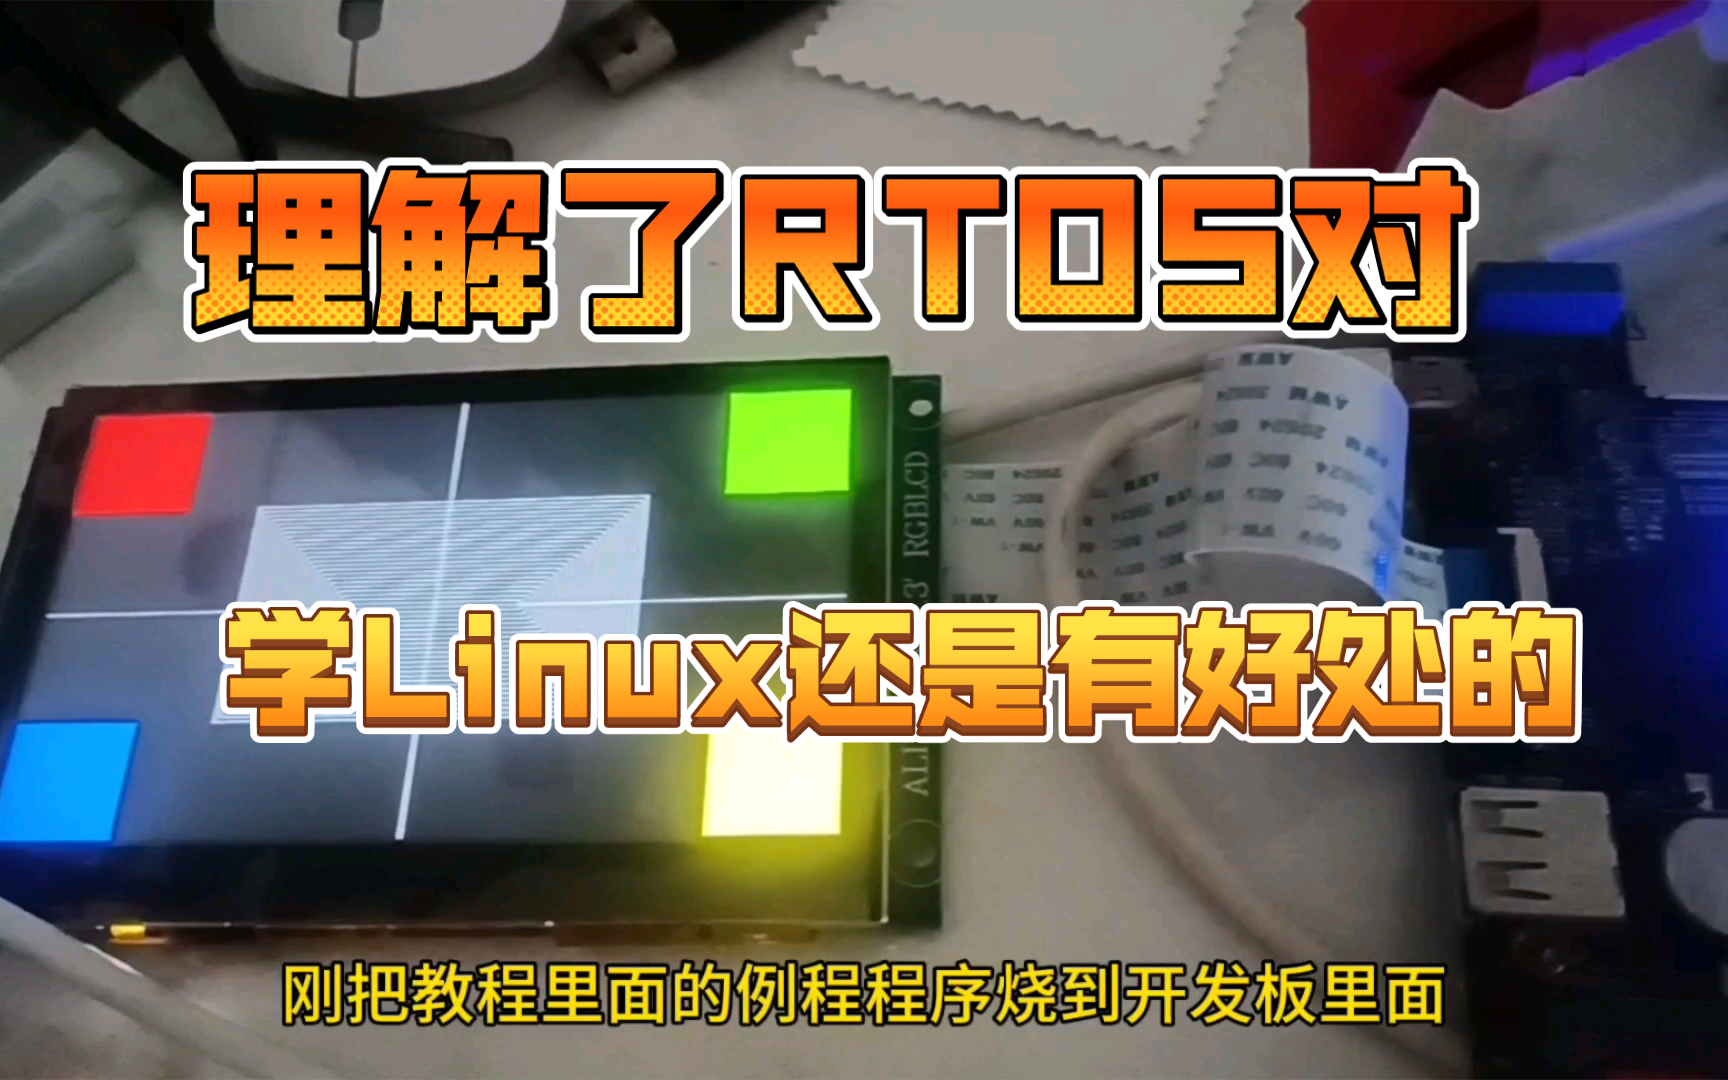 RTOS工程师学Linux虐后感:RTOS确实轻